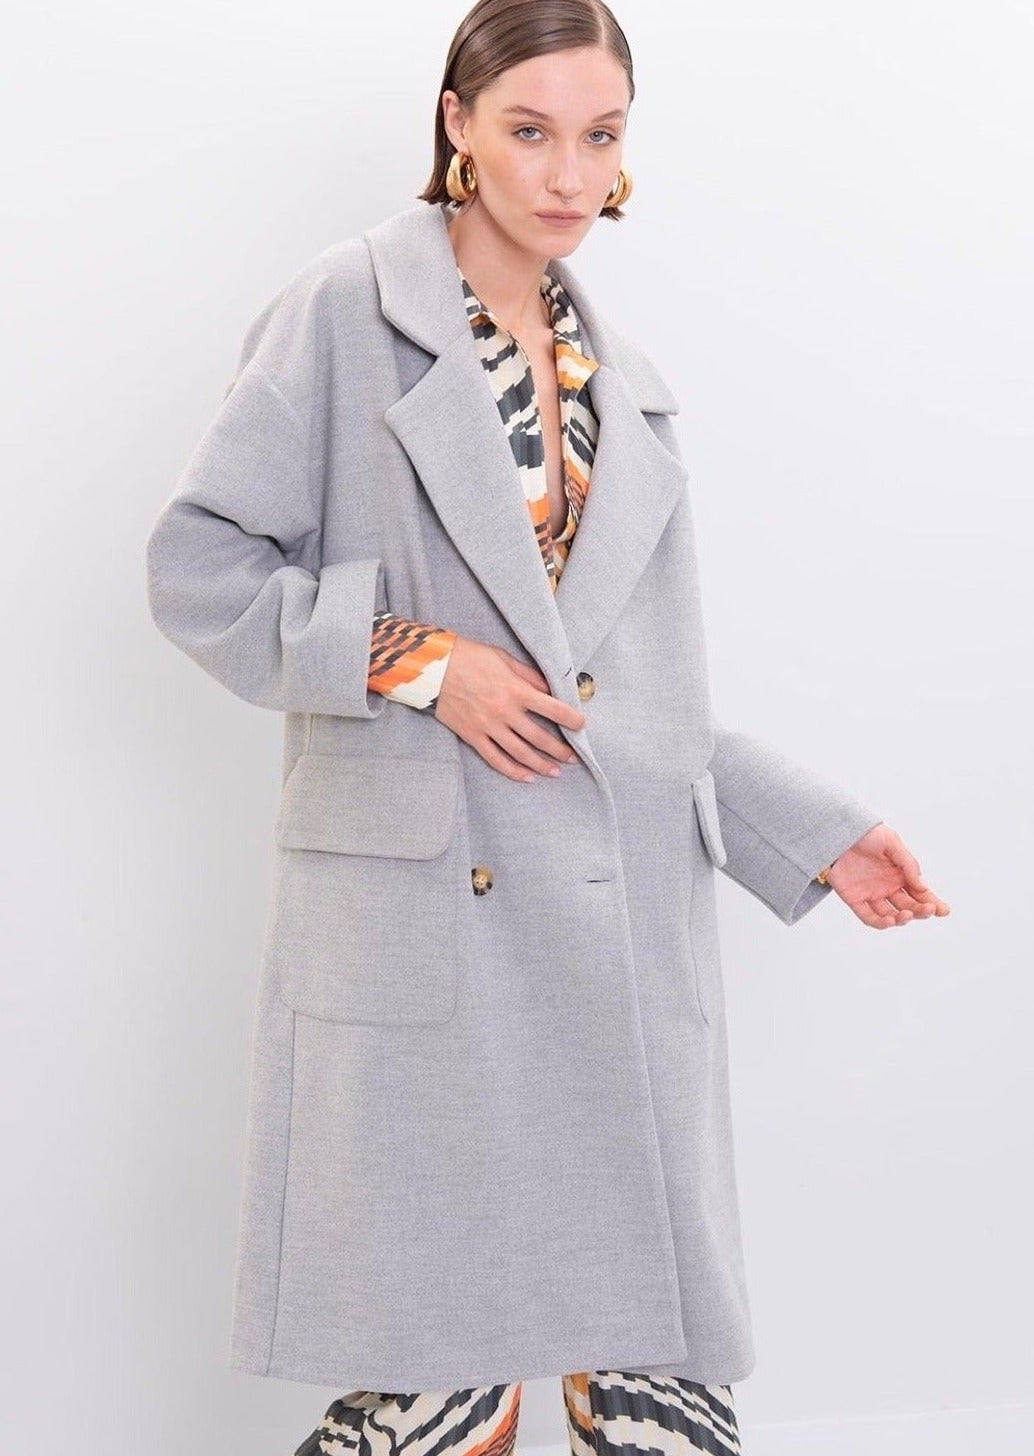 Дамско палто CATELEIA  https://bvseductive.com/products/women-s-coats-cateleia  80 % полиестер 17 % вискоза 3 % еластан дълго дамско палто в сив цвят в изчистен и класически дизайн модел с дълъг ръкав и яка с ревер с два практични джоба от двете страни стилно и комфортно предложение за хладните дни